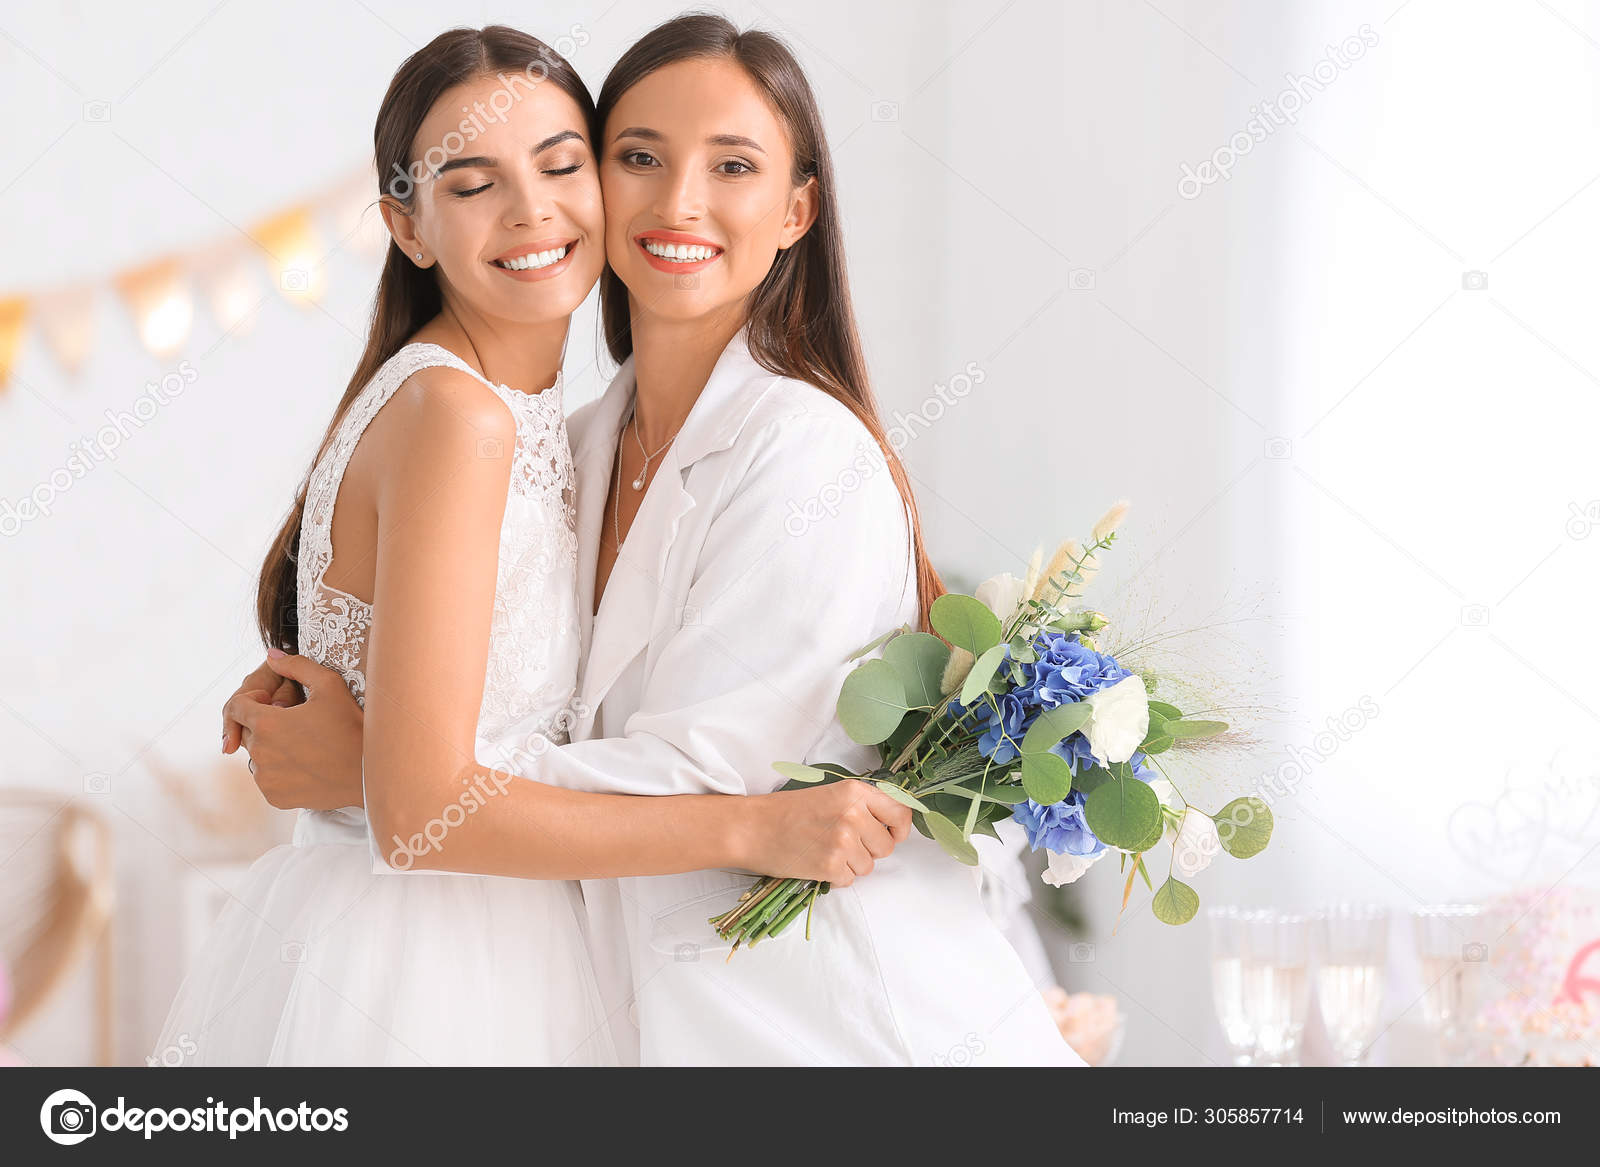 Beautiful lesbian couple during wedding ceremony Stock Photo by ©serezniy 305857714 photo image